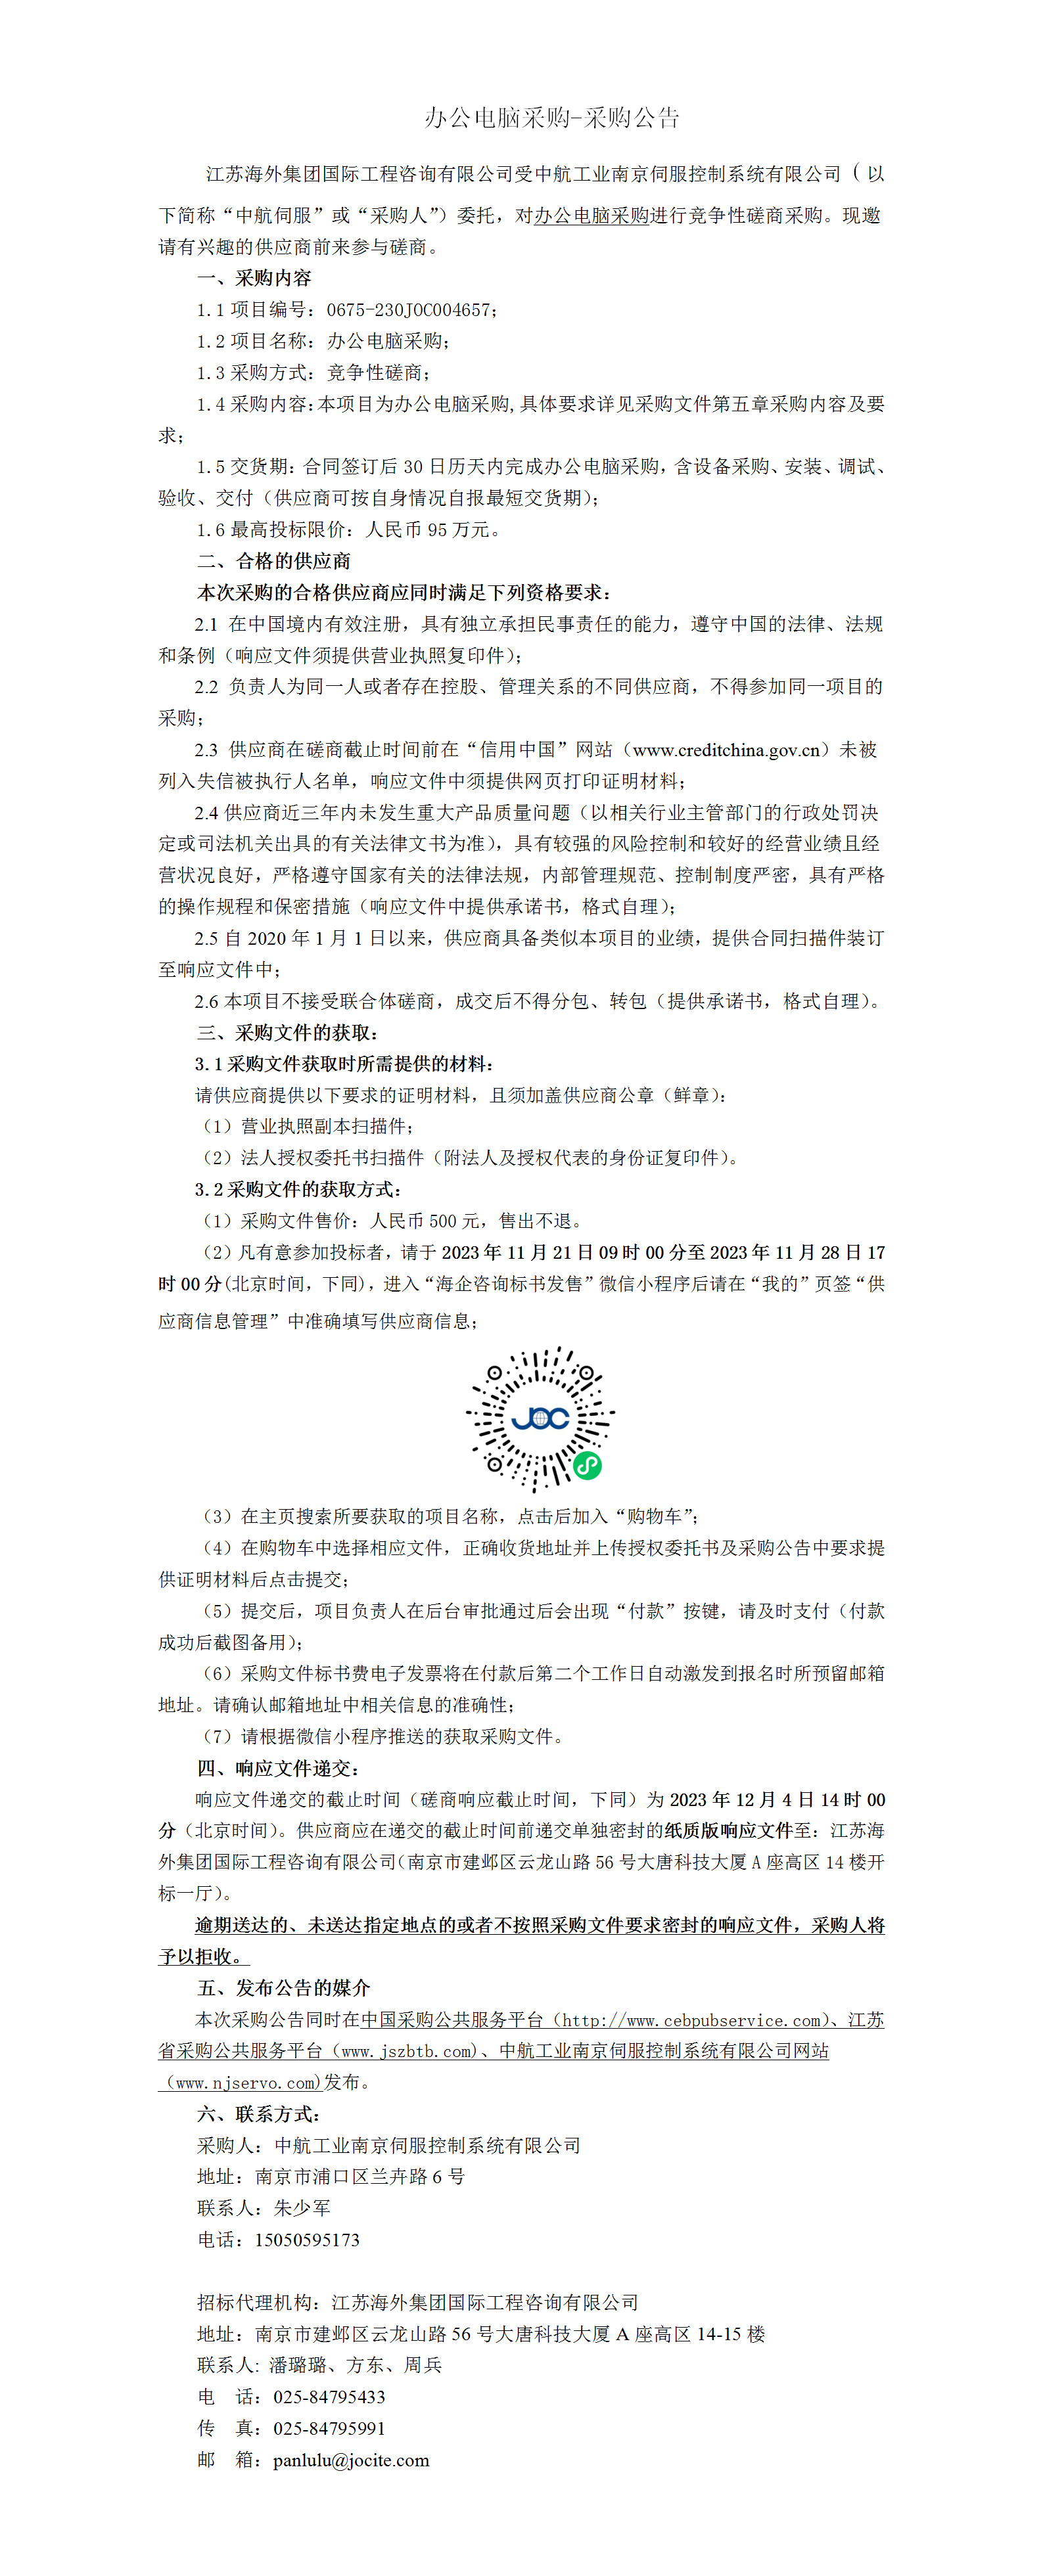 中航伺服江宁新厂区计算机采购竞争性磋商公告